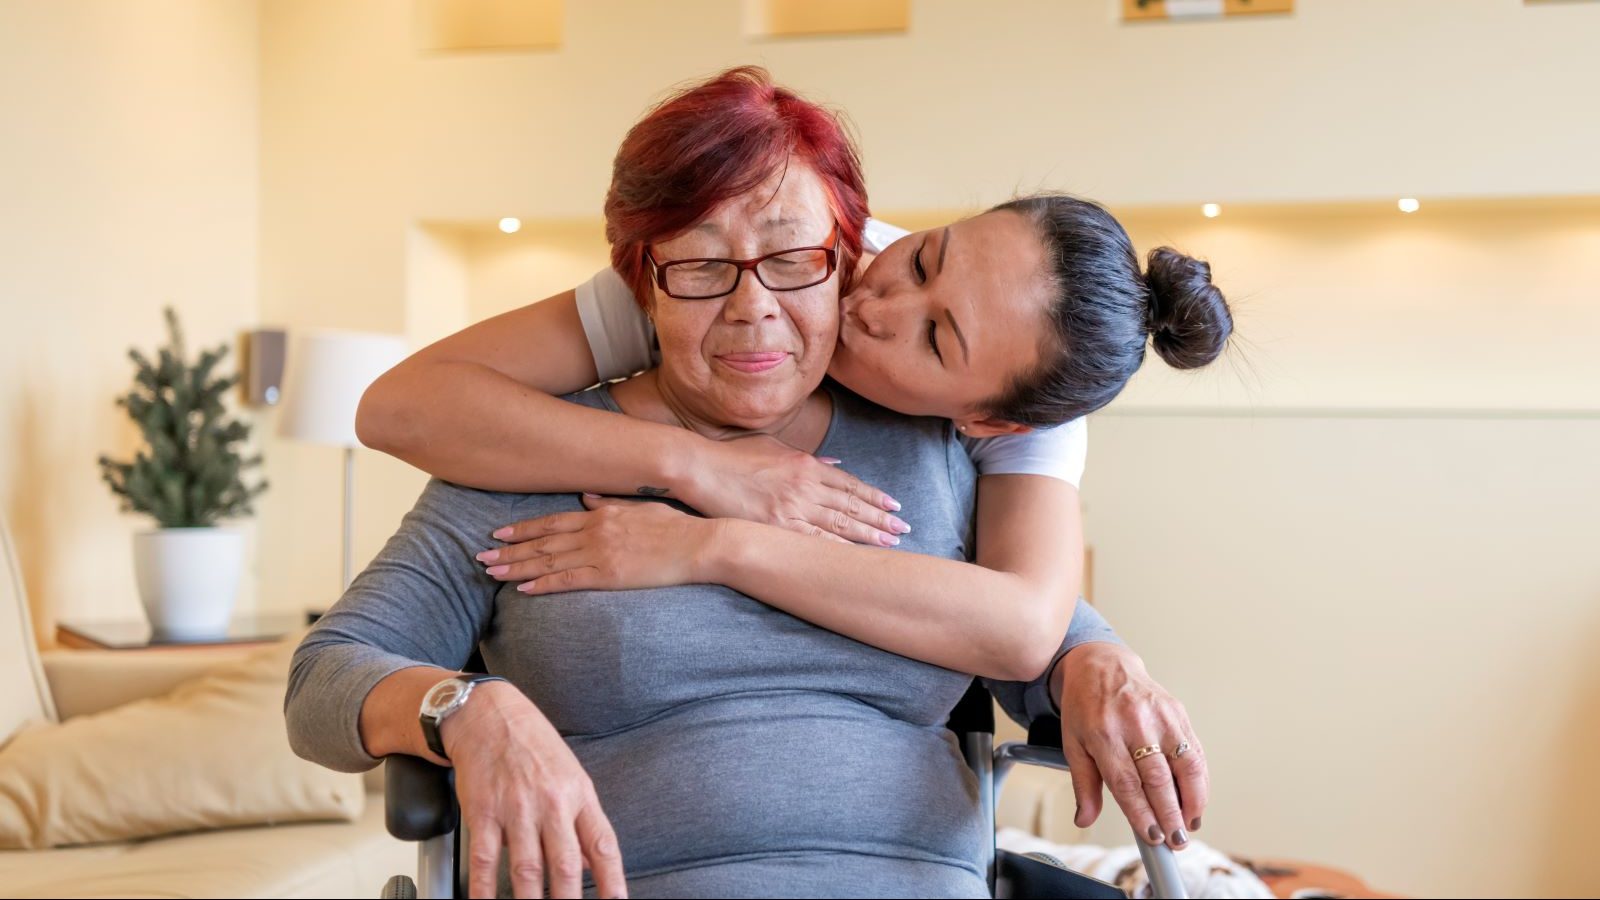 Caretaker hugs a woman with Alzheimer's.